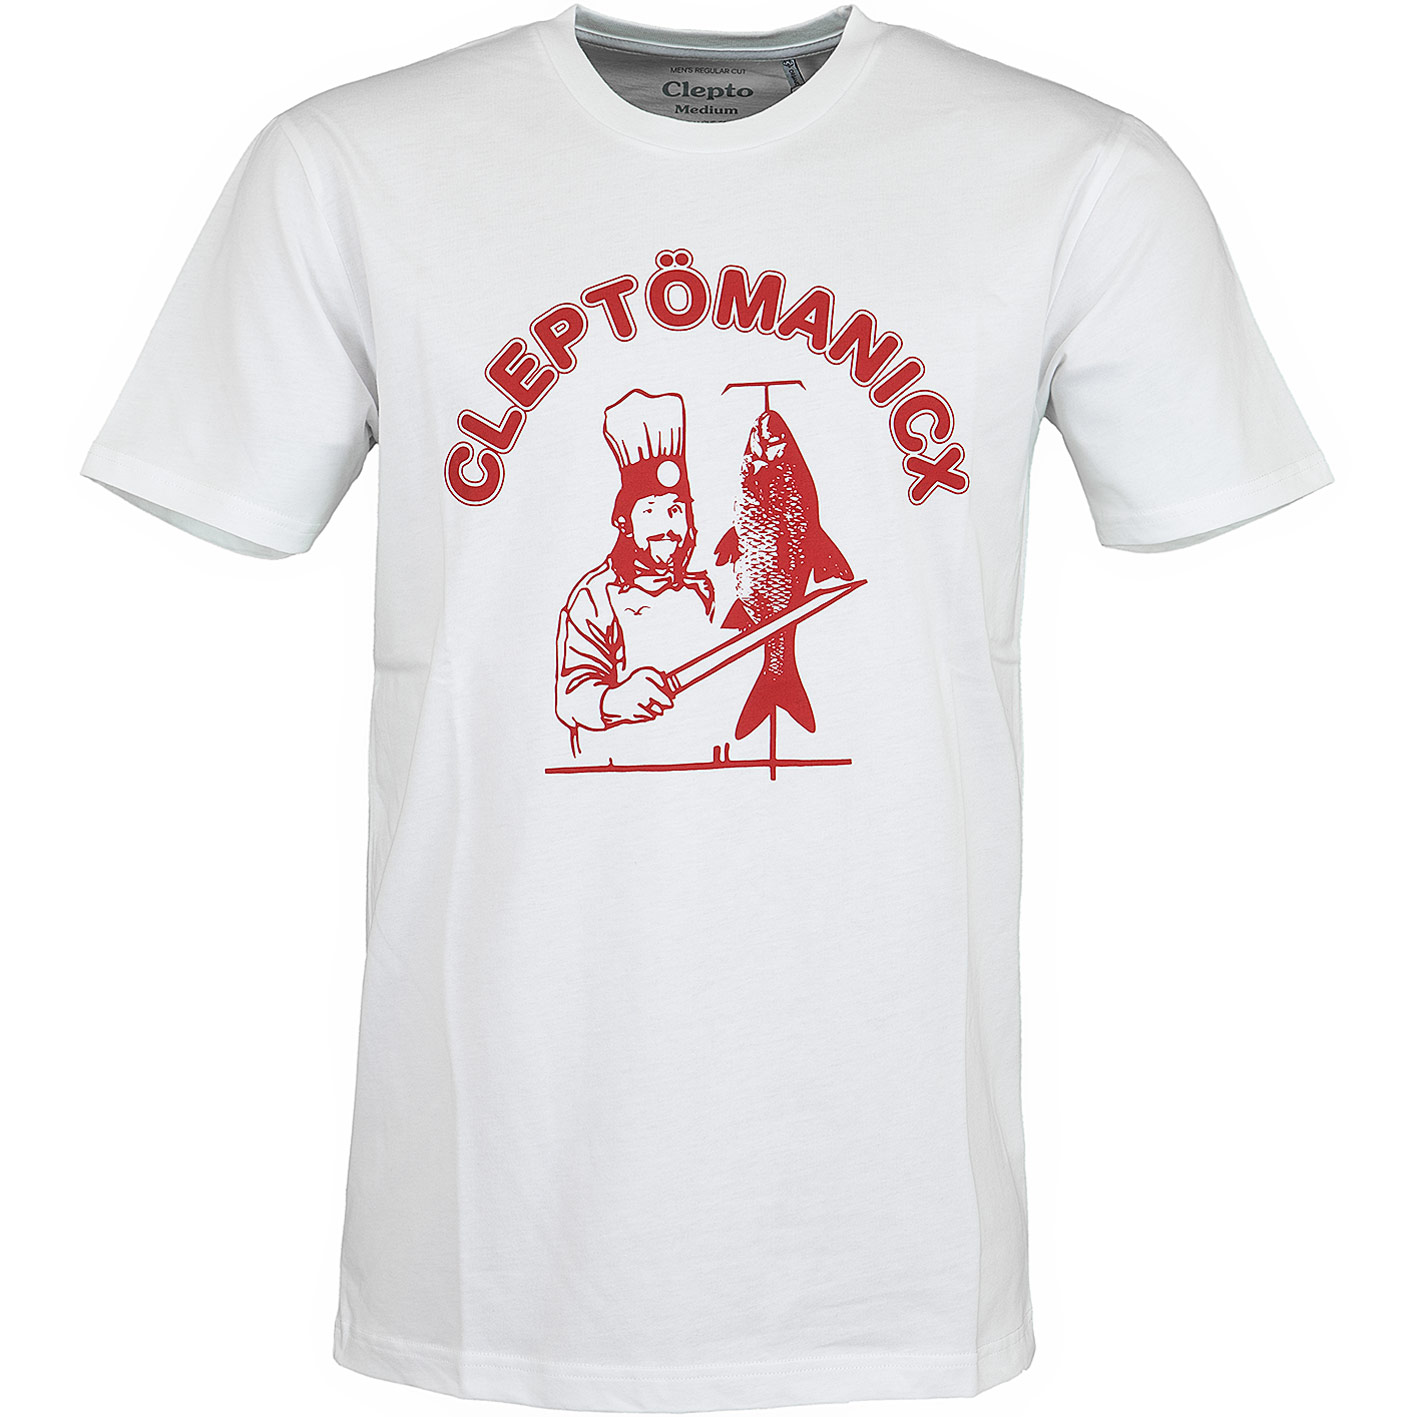 ☆ Cleptomanicx T-Shirt Dönicx weiß hier - bestellen